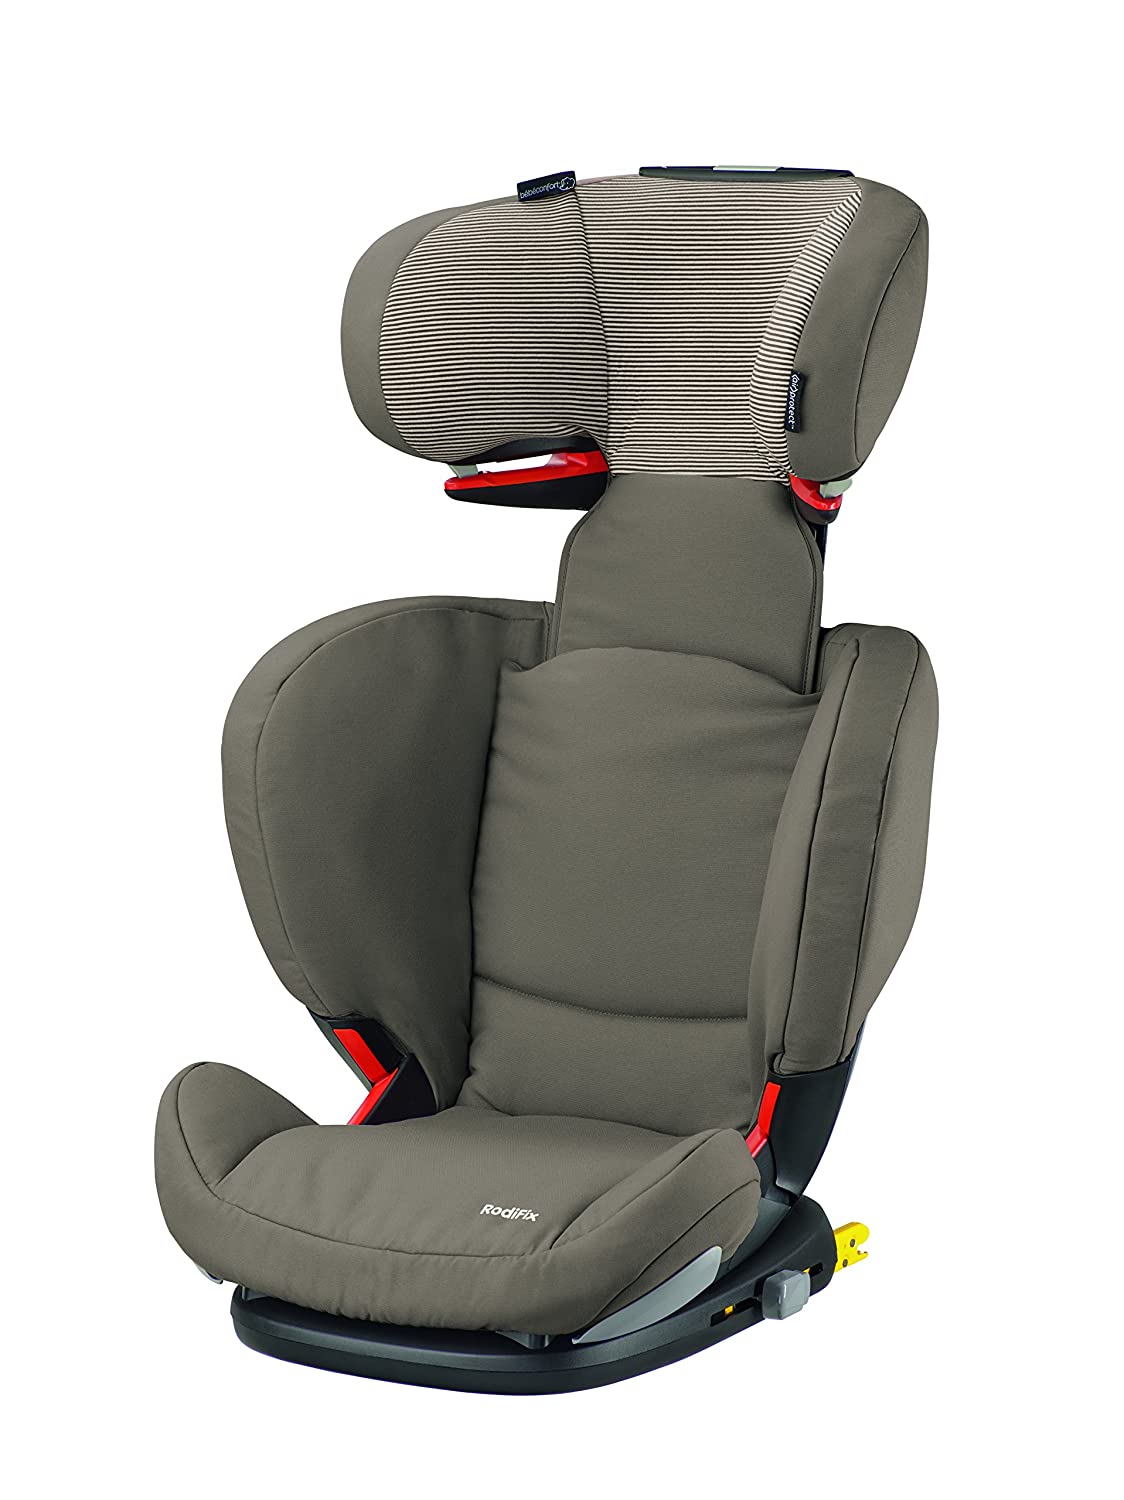 BEBE CONFORT Bébé Confort Rodifix Car Seat Group 2/3 Brown 2015 Collection